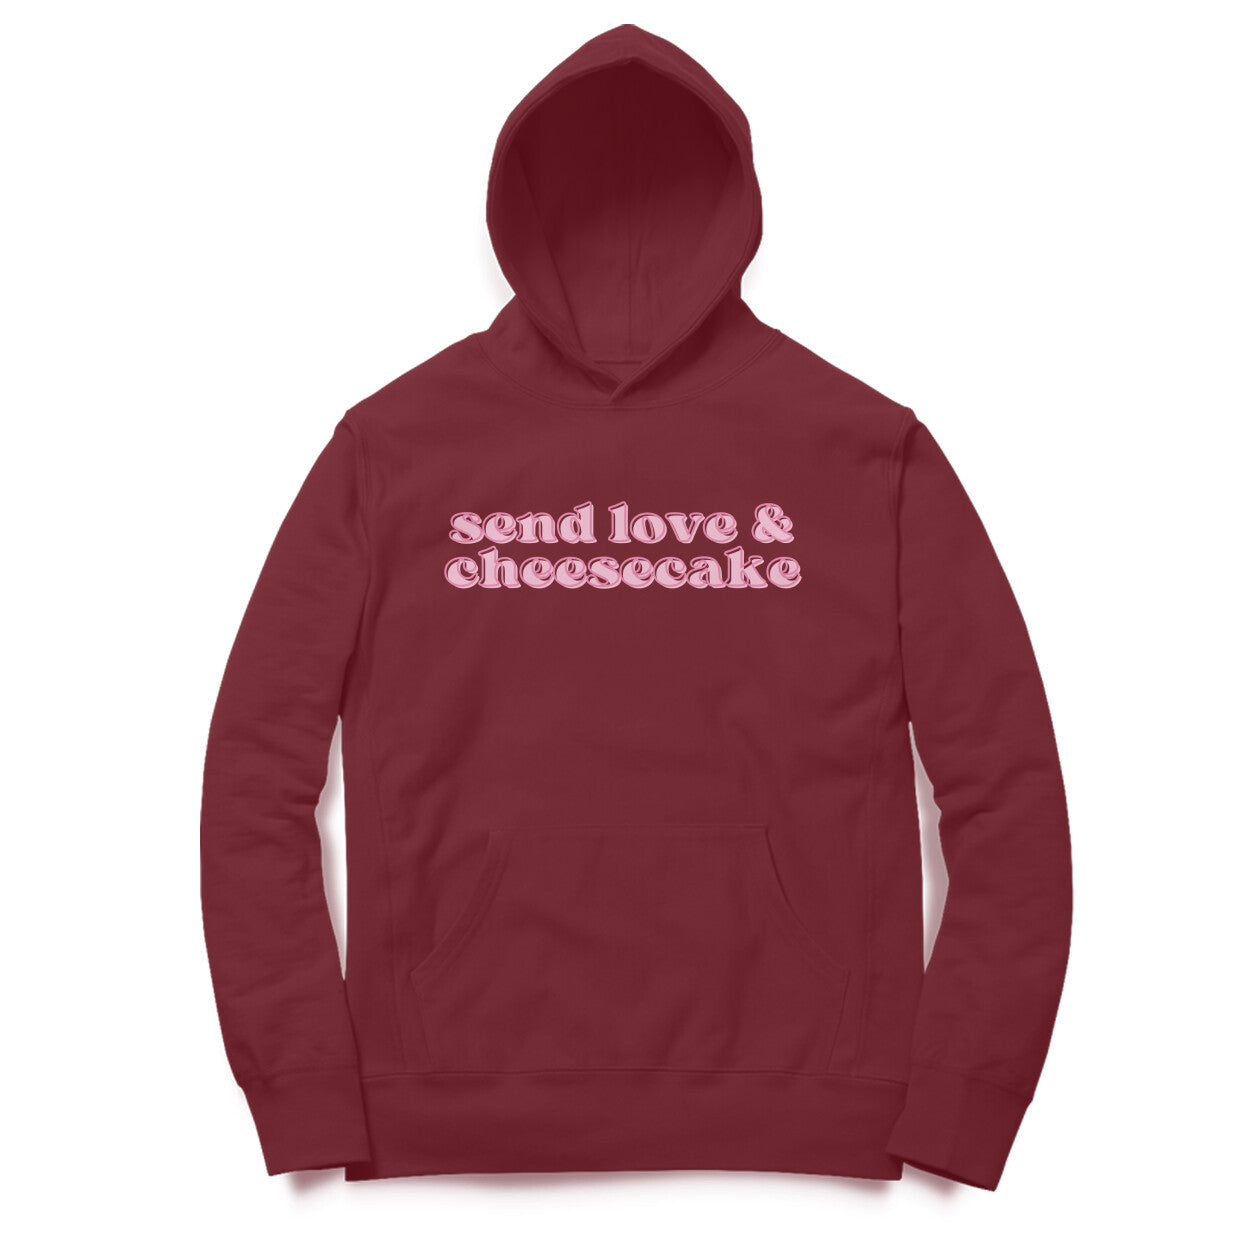 Send Love & Cheesecake Unisex Hoodie